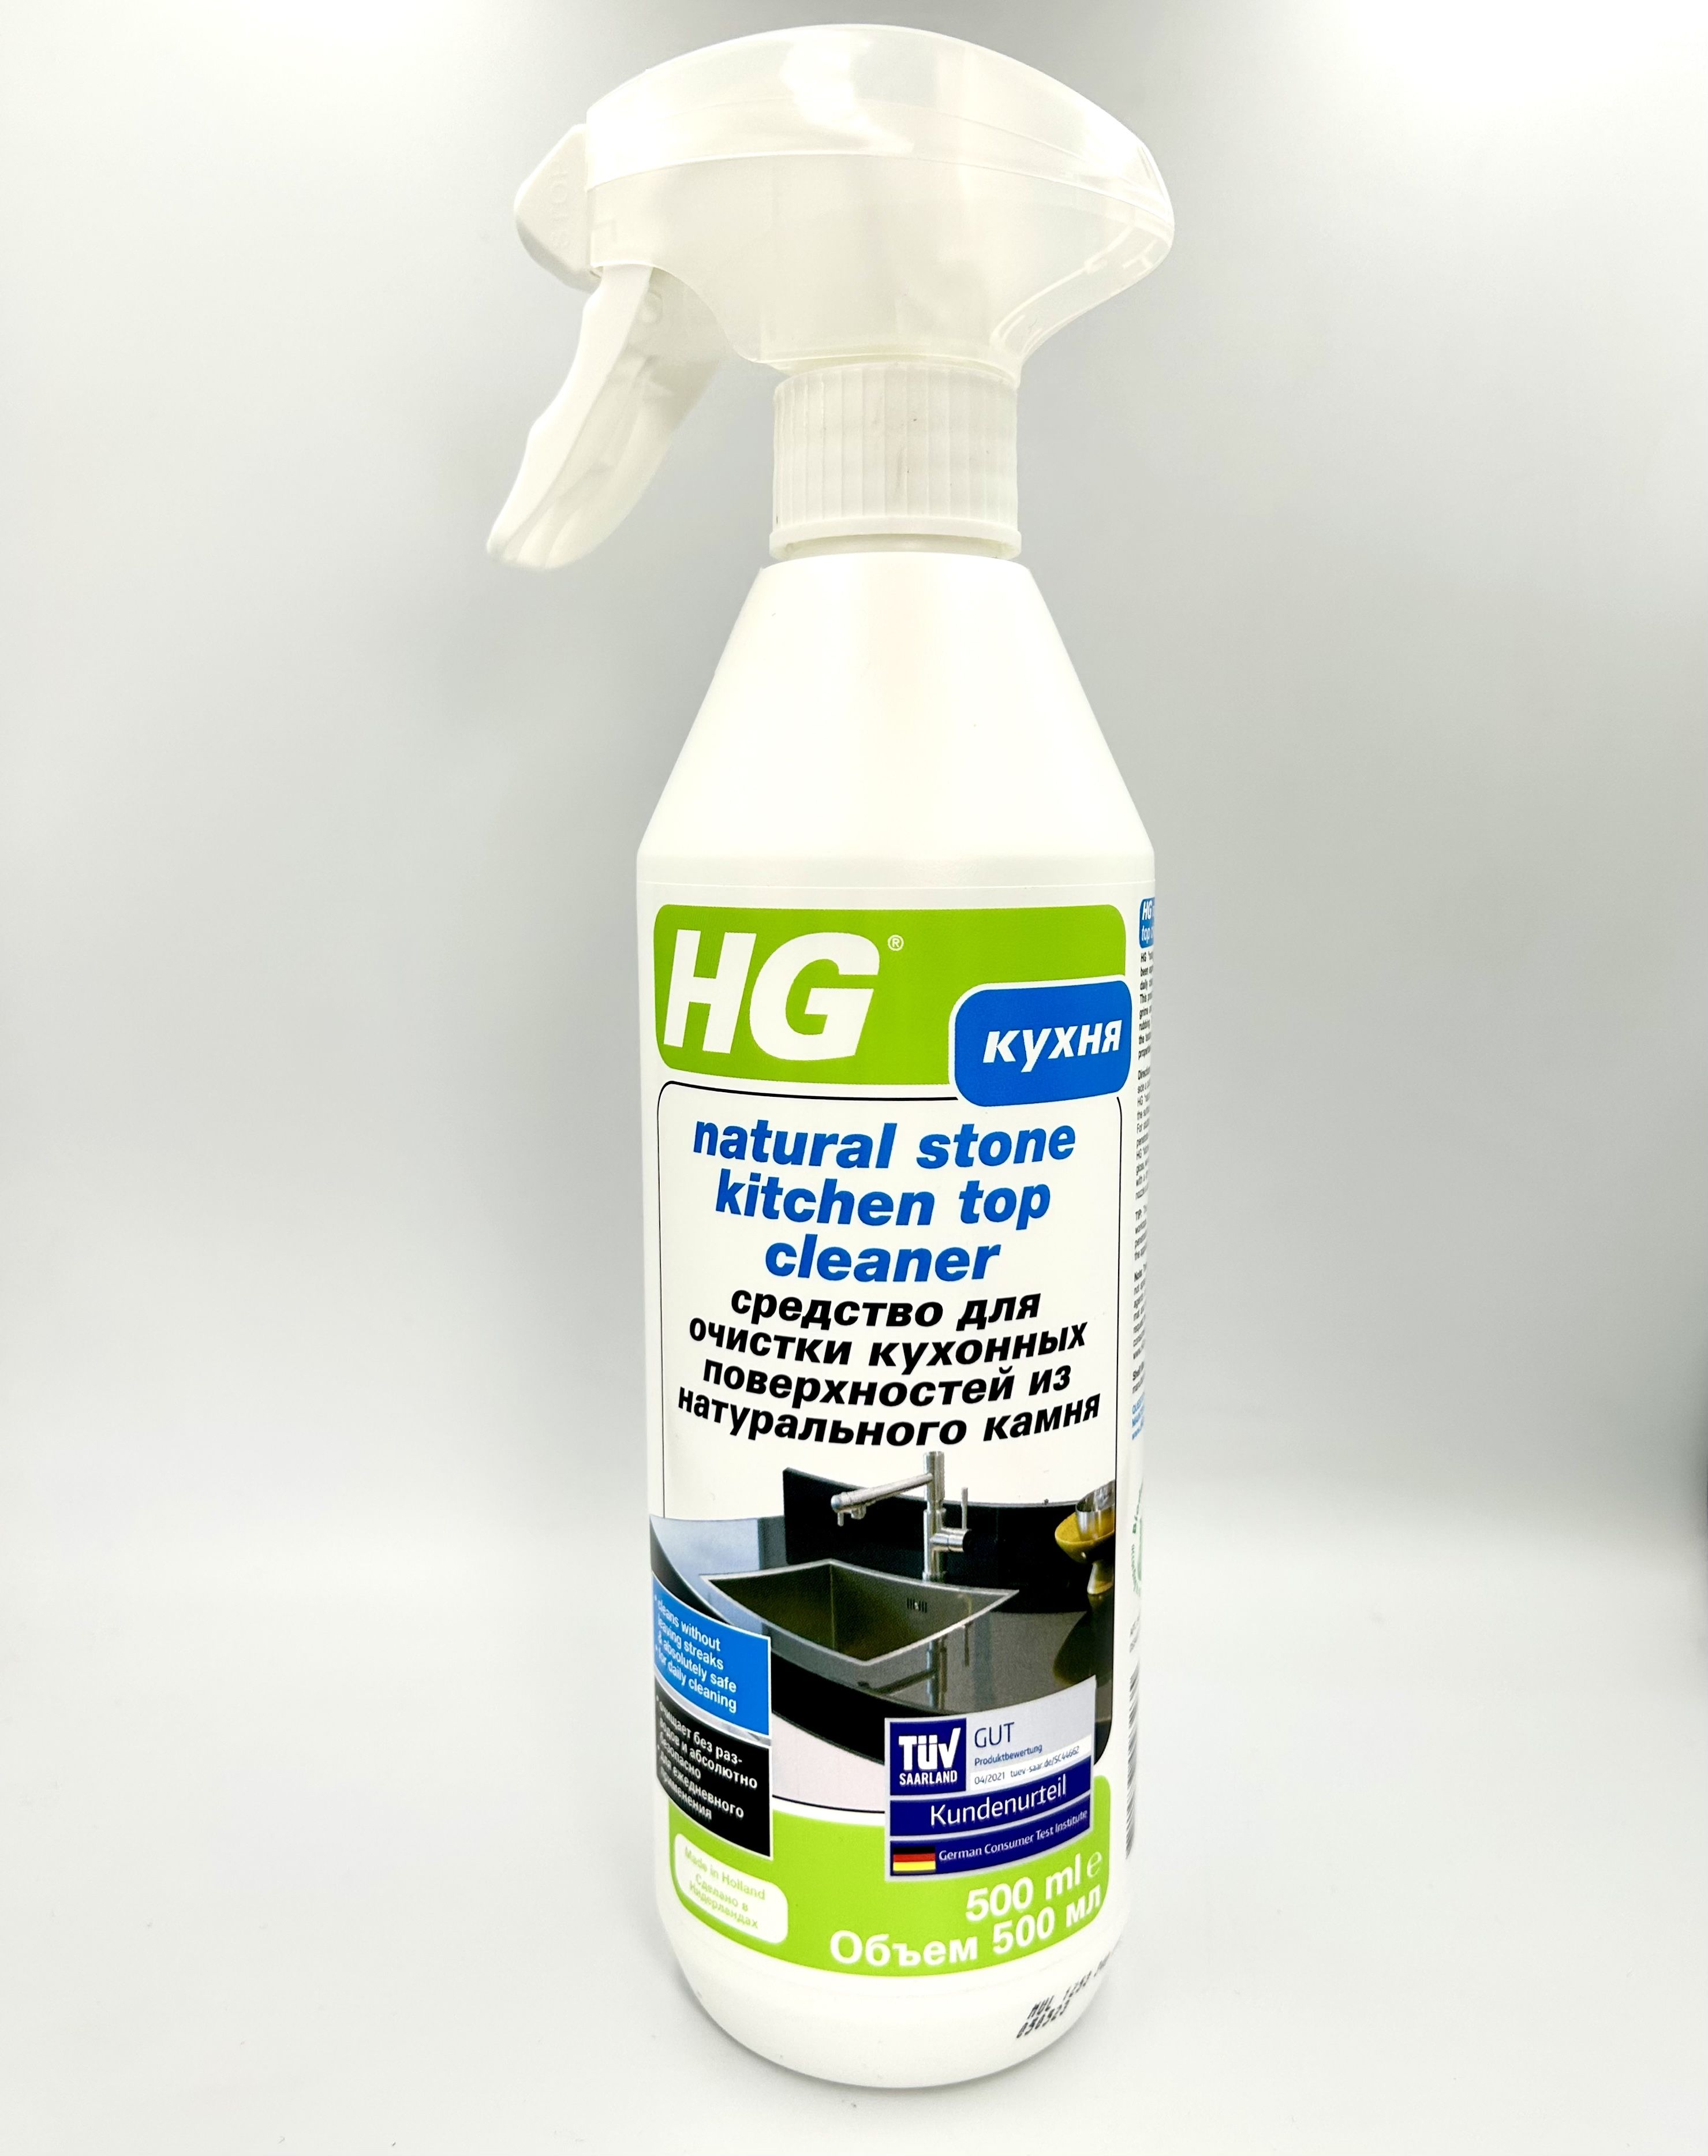 HG Средство для очистки кухонных поверхностей из натурального камня 500 мл с распылителем